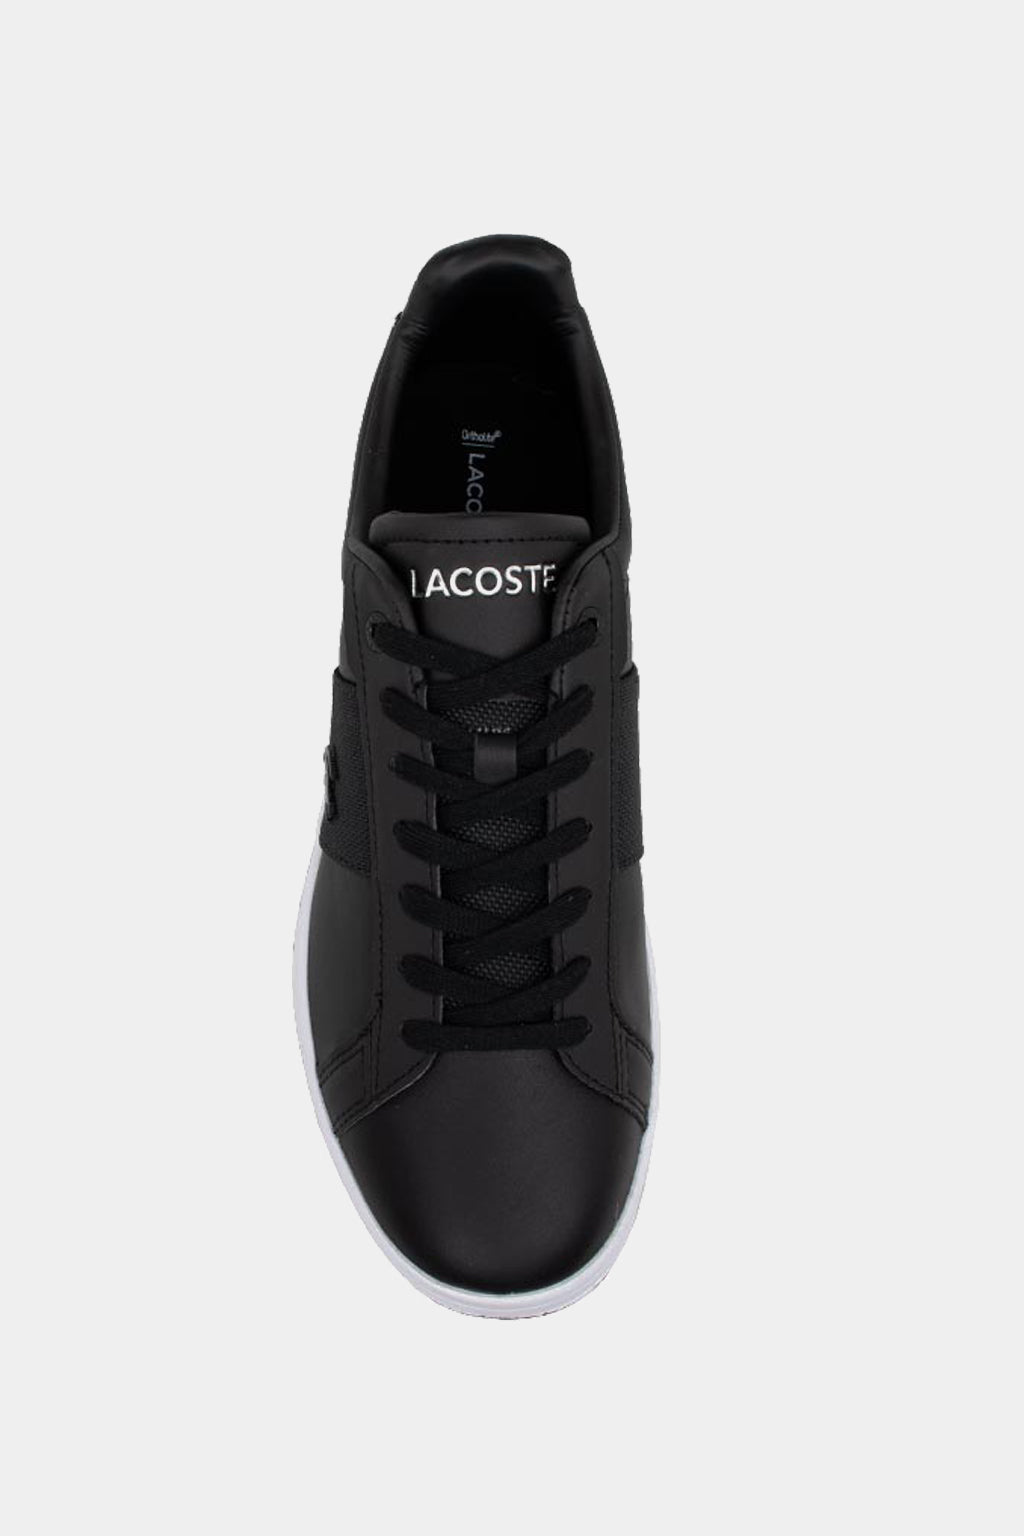 Lacoste - Men's Sneaker Carnaby Pro